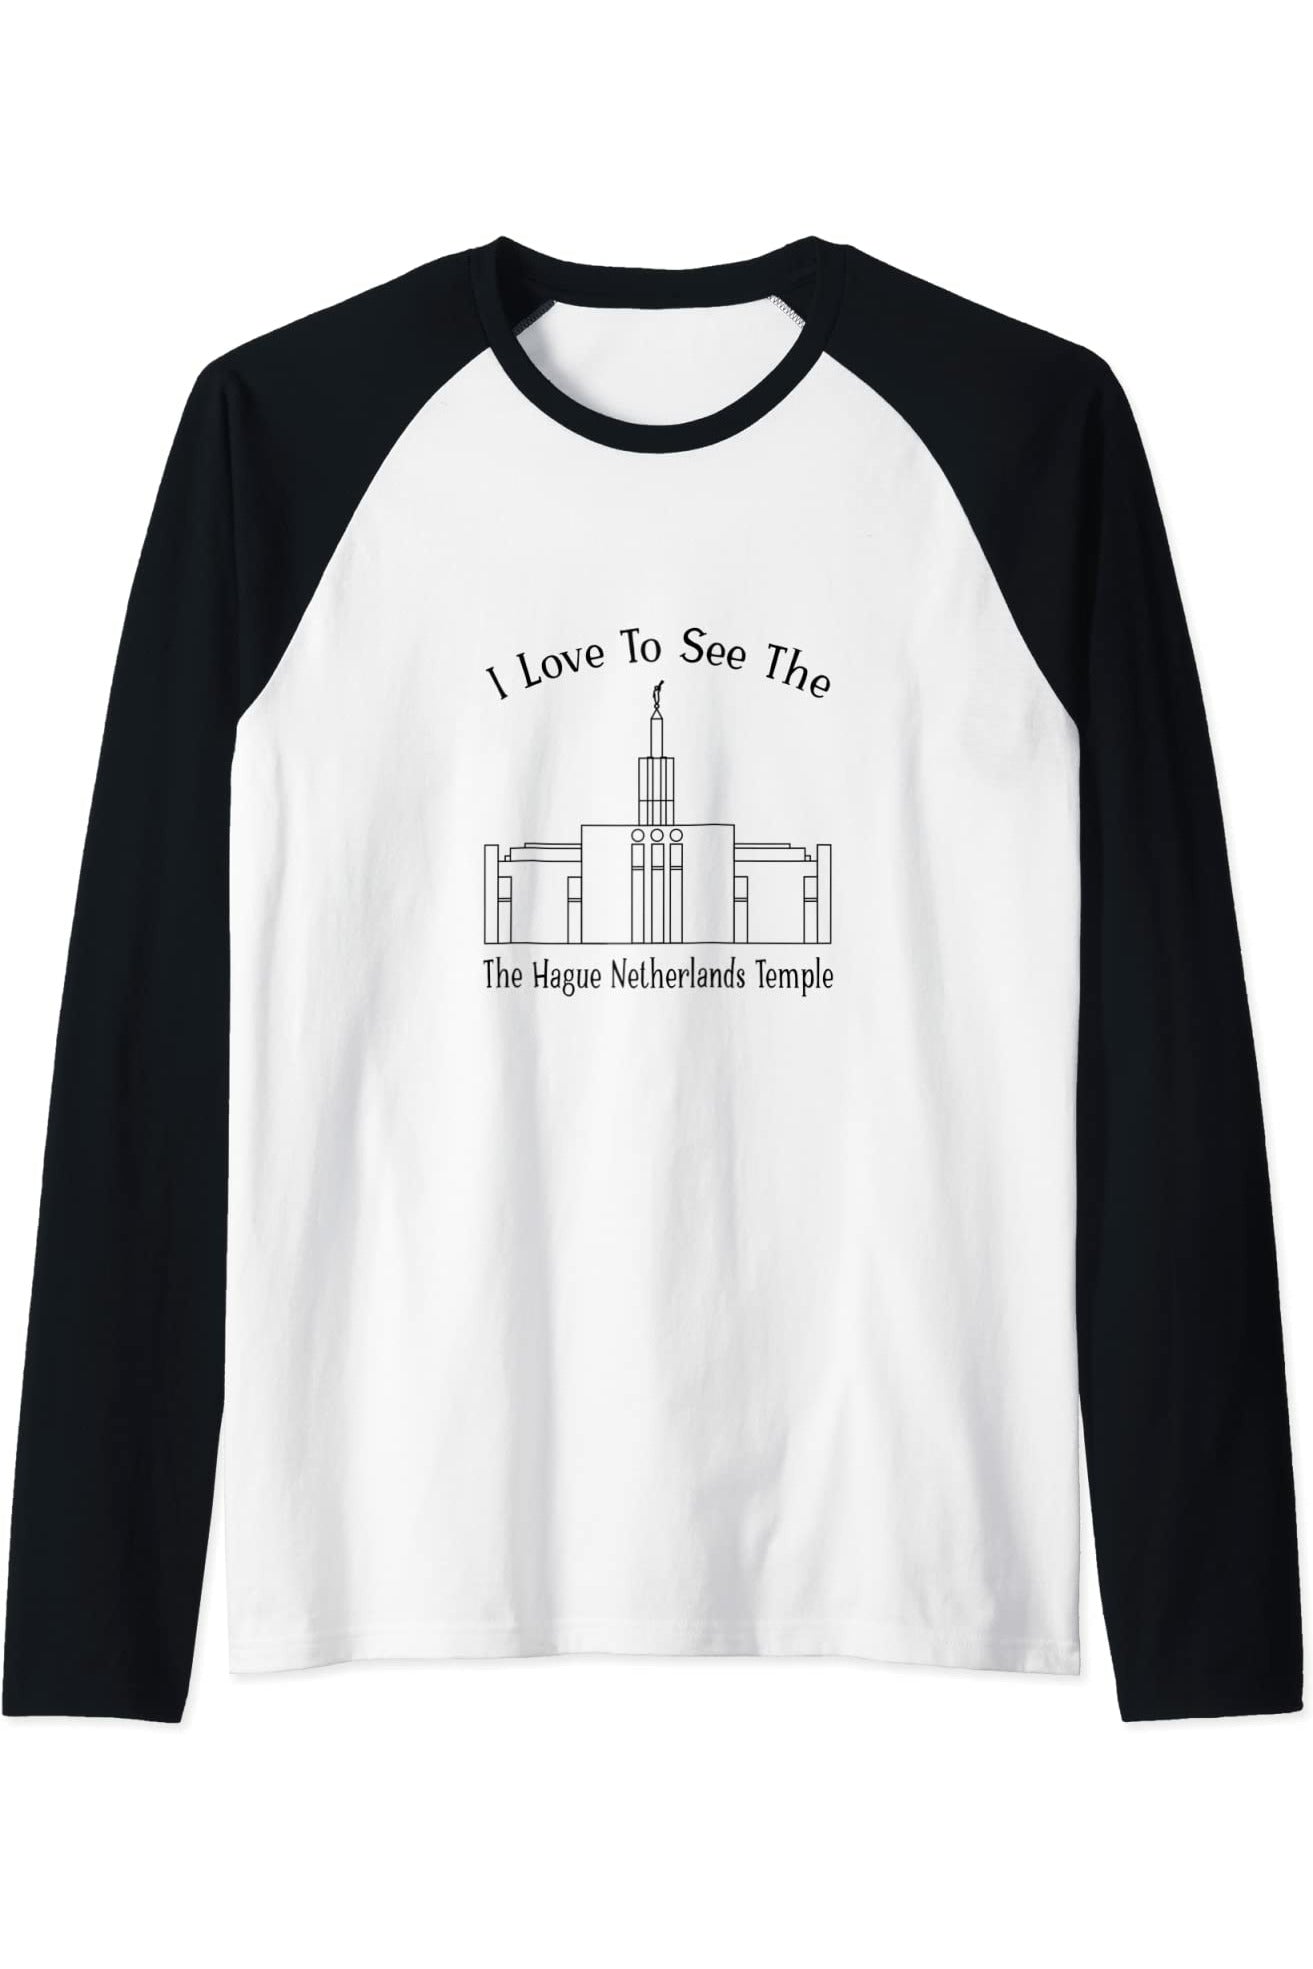 Il tempio dell'Aia Paesi Bassi, mi piace vedere il mio tempio, felice Raglan T-Shirt